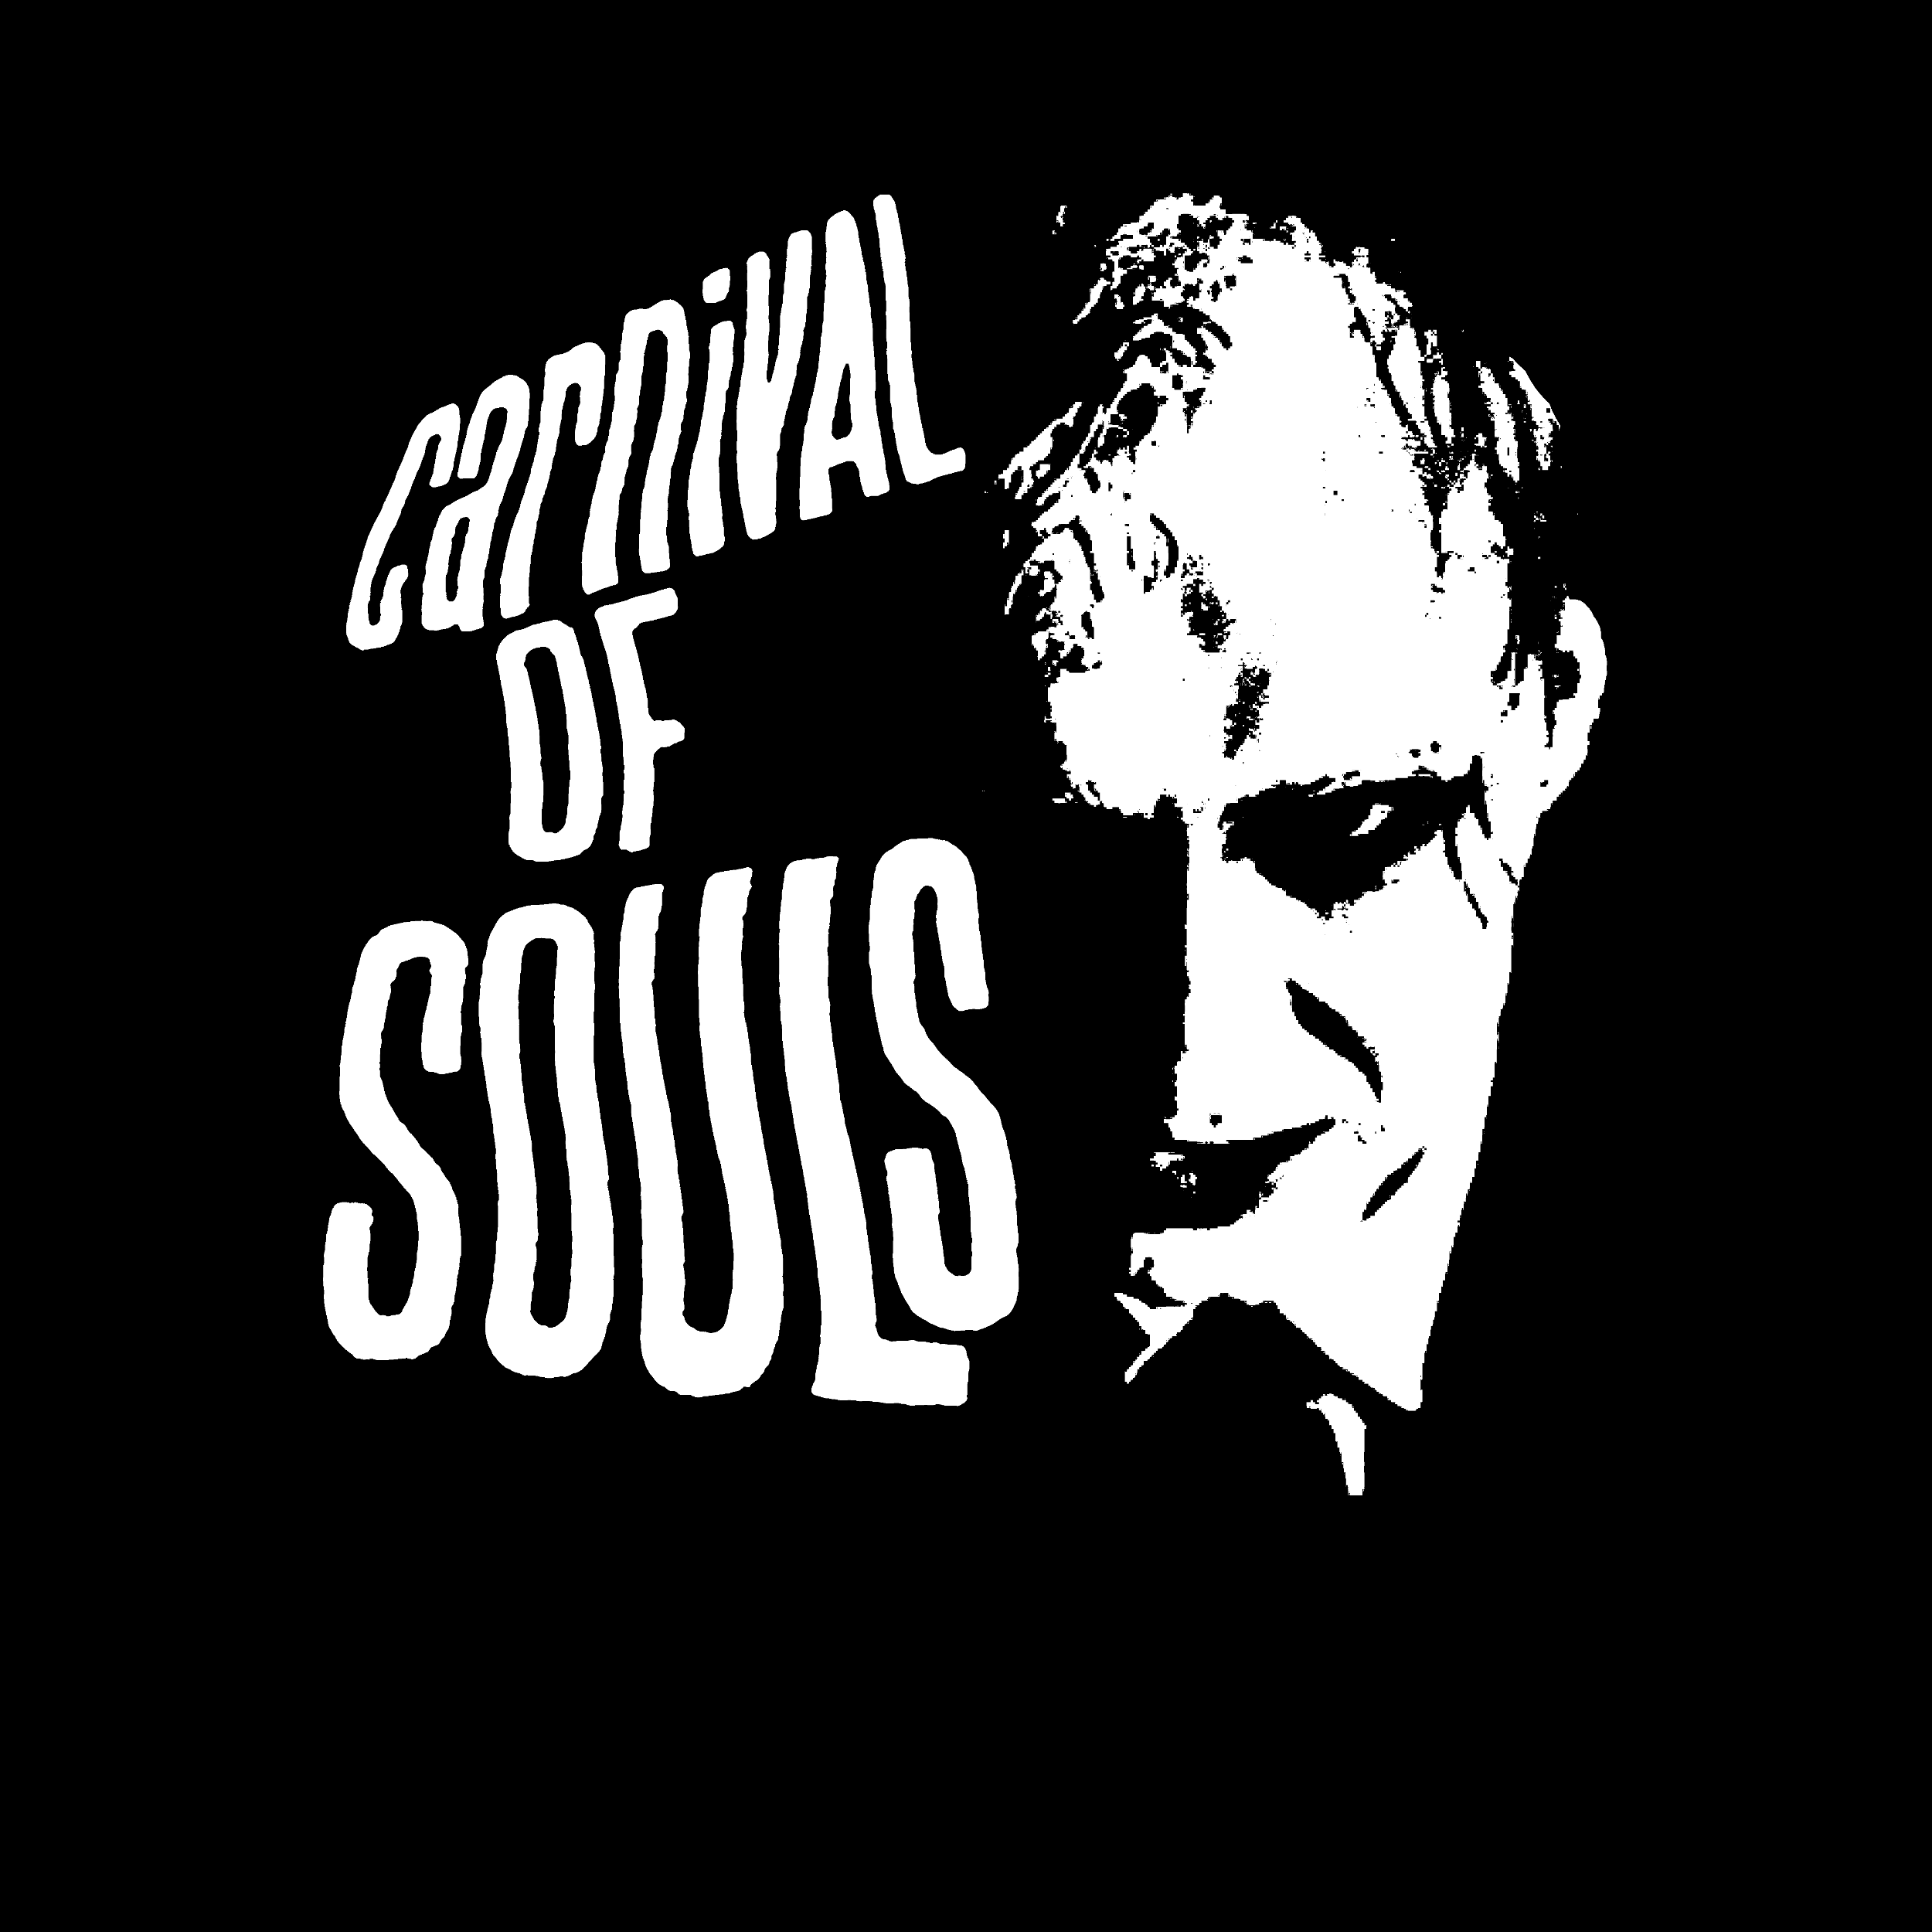 Carnival Of Souls Film Premium Tee